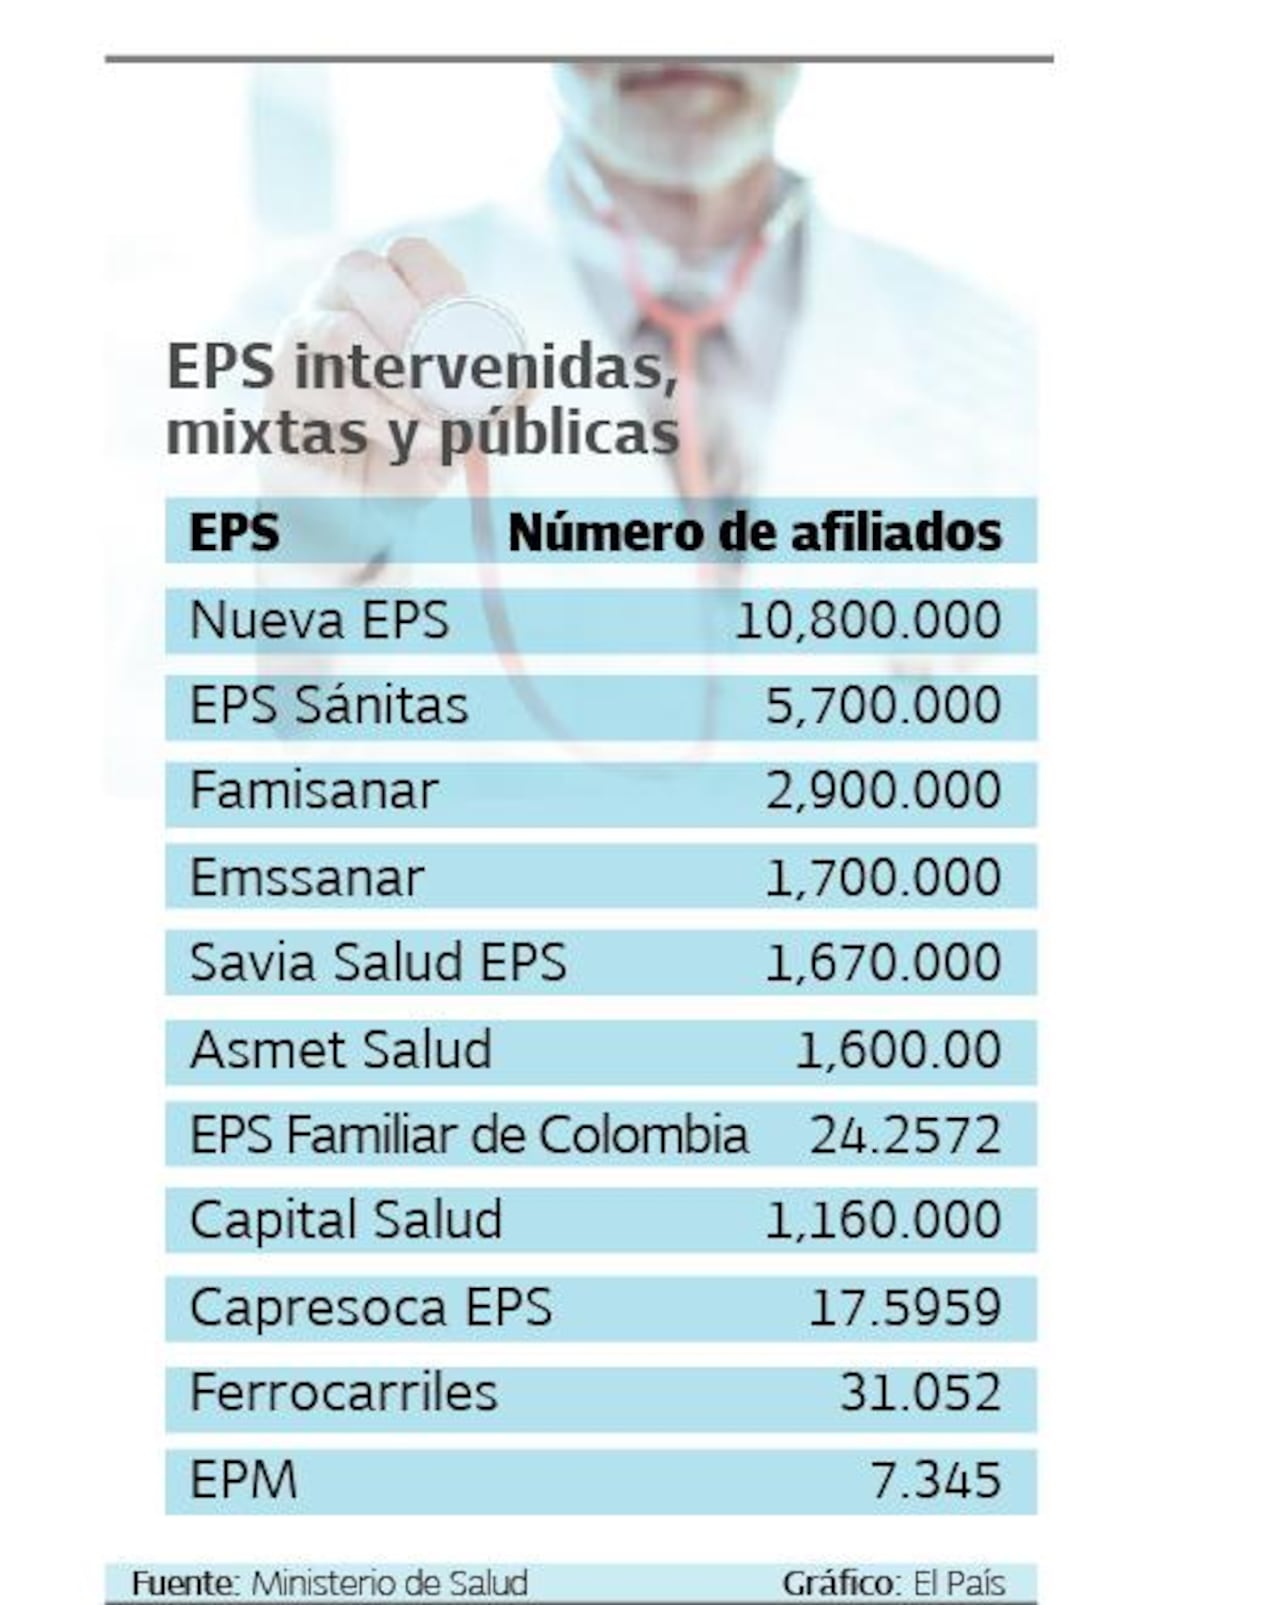 EPS intervenidas mixtas y públicas

Gráfico: El País   Fuente: Ministerio de Salud